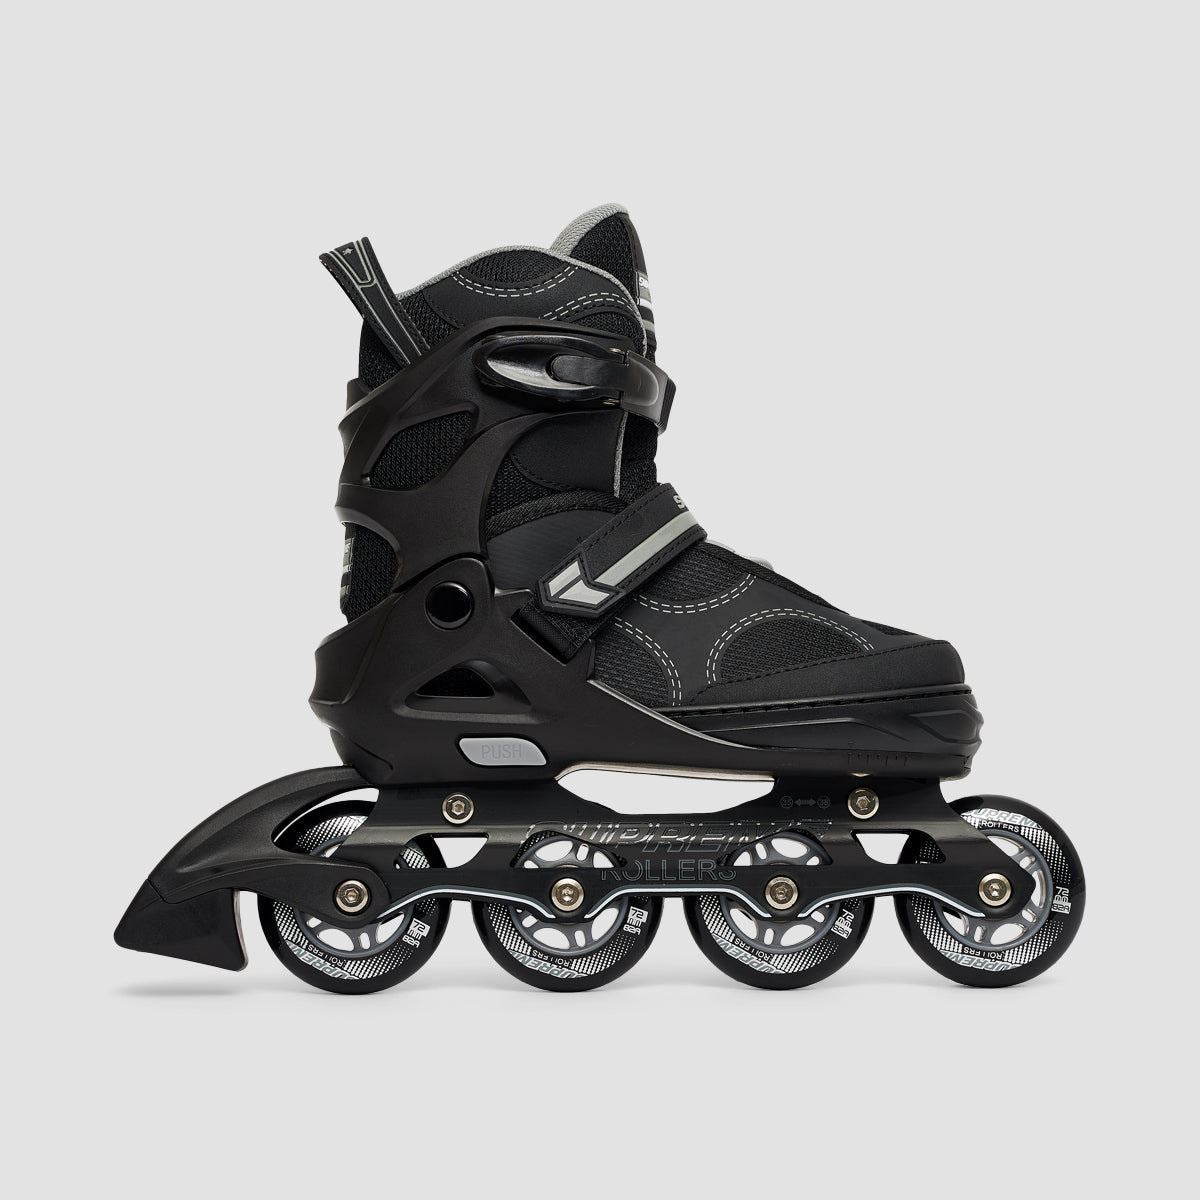 Supreme Rollers Venice Adjustable Inline Skates Grey - Kids